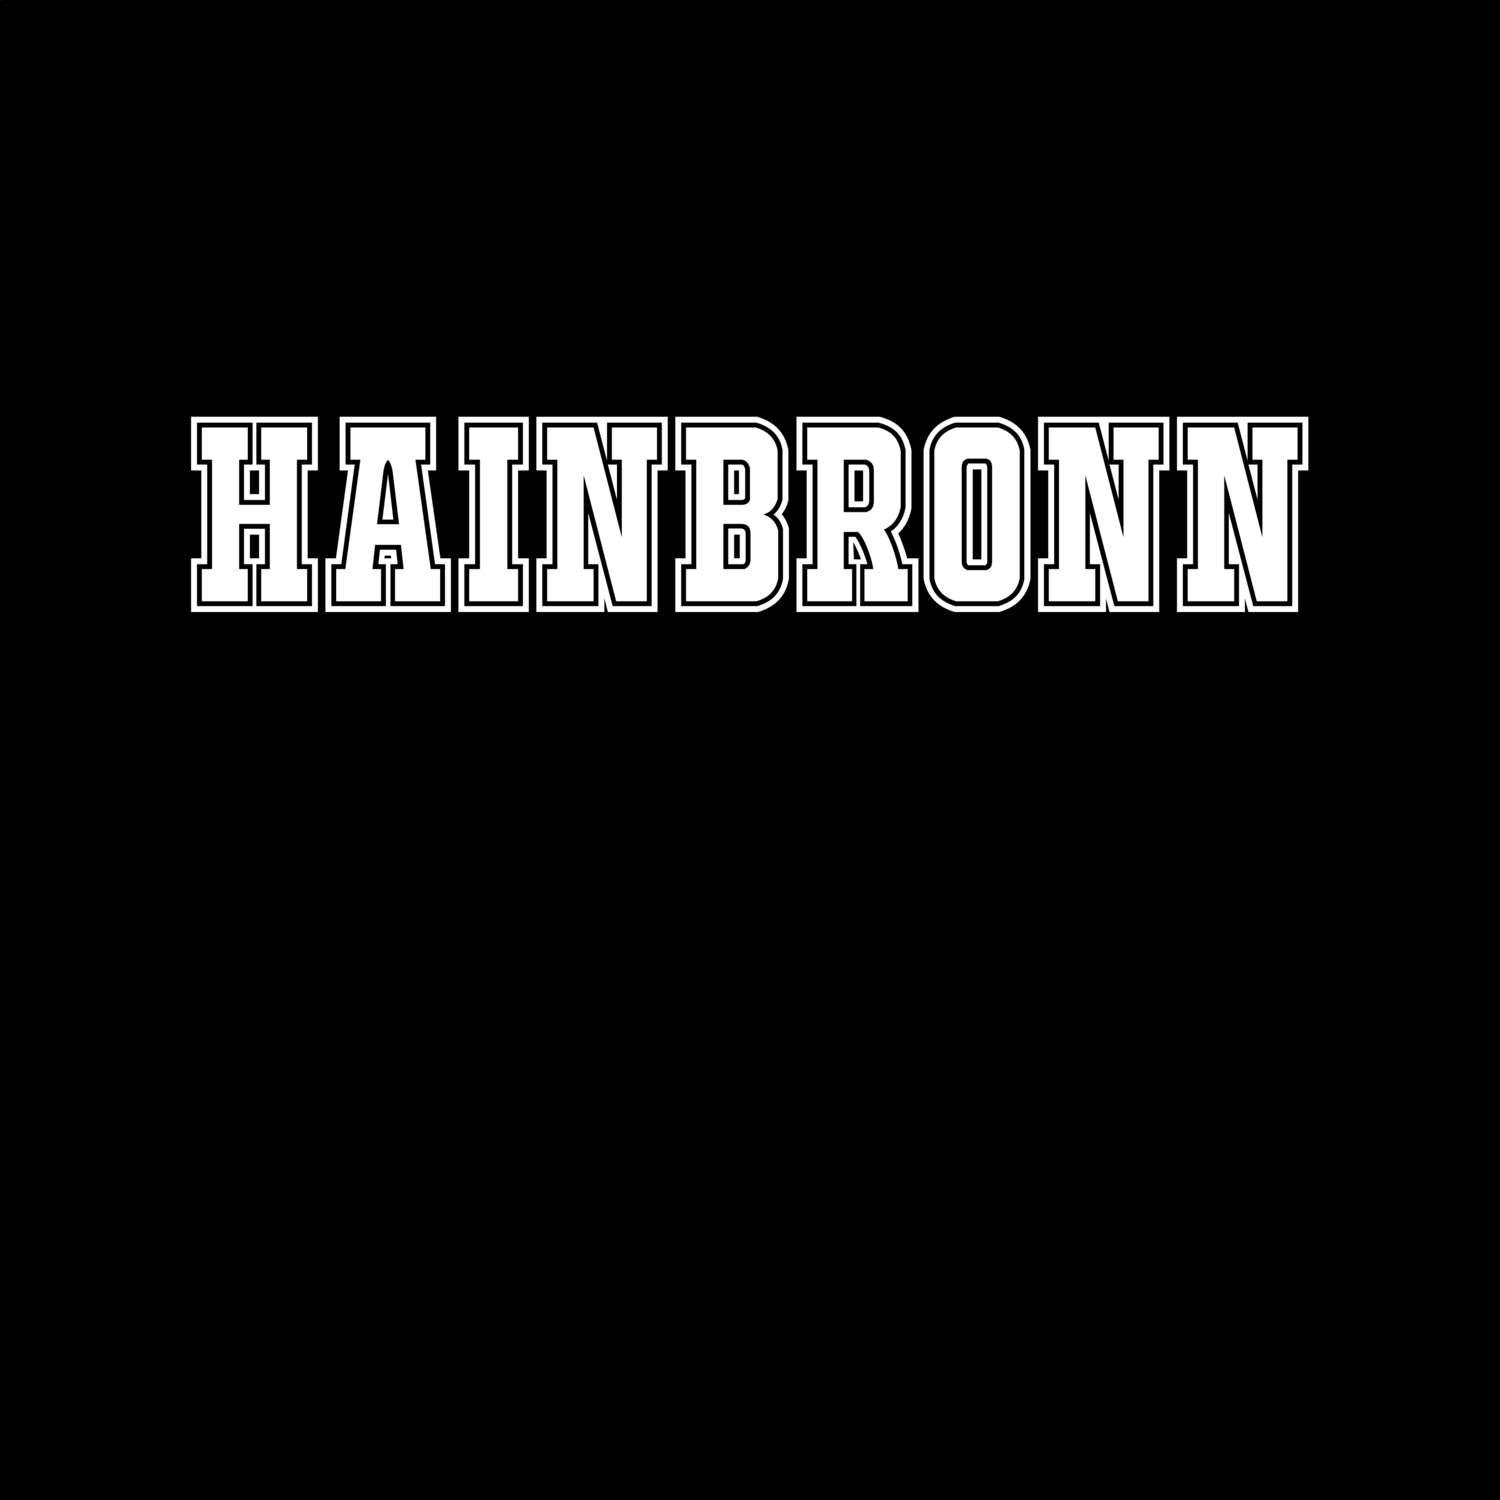 Hainbronn T-Shirt »Classic«